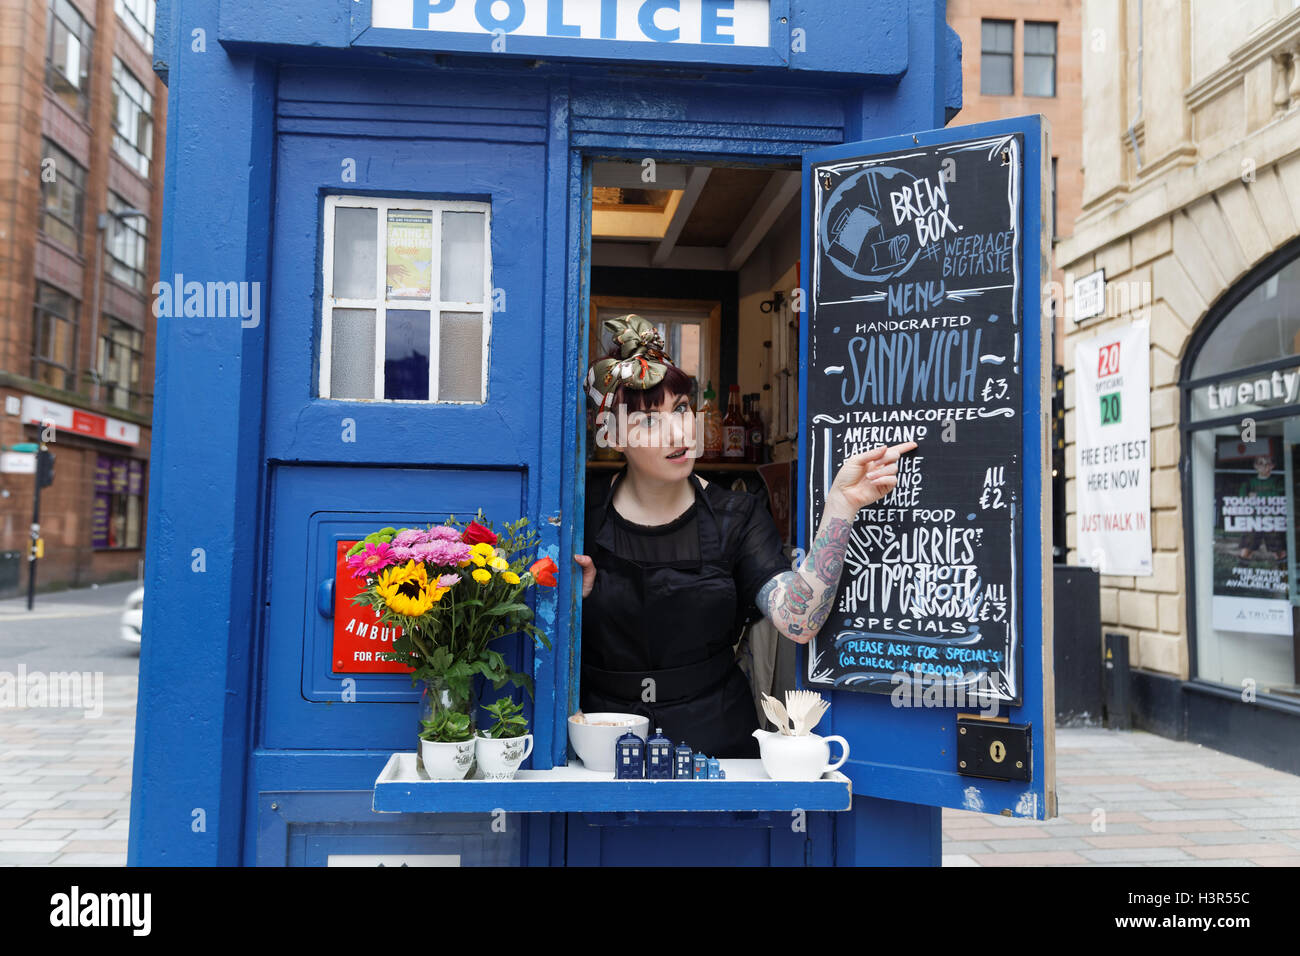 Sandwich bar café dans une boîte de la police de Glasgow qui est rendu célèbre en tant que se ressemblent au médecin qui Tardis dans le centre commerçant Banque D'Images